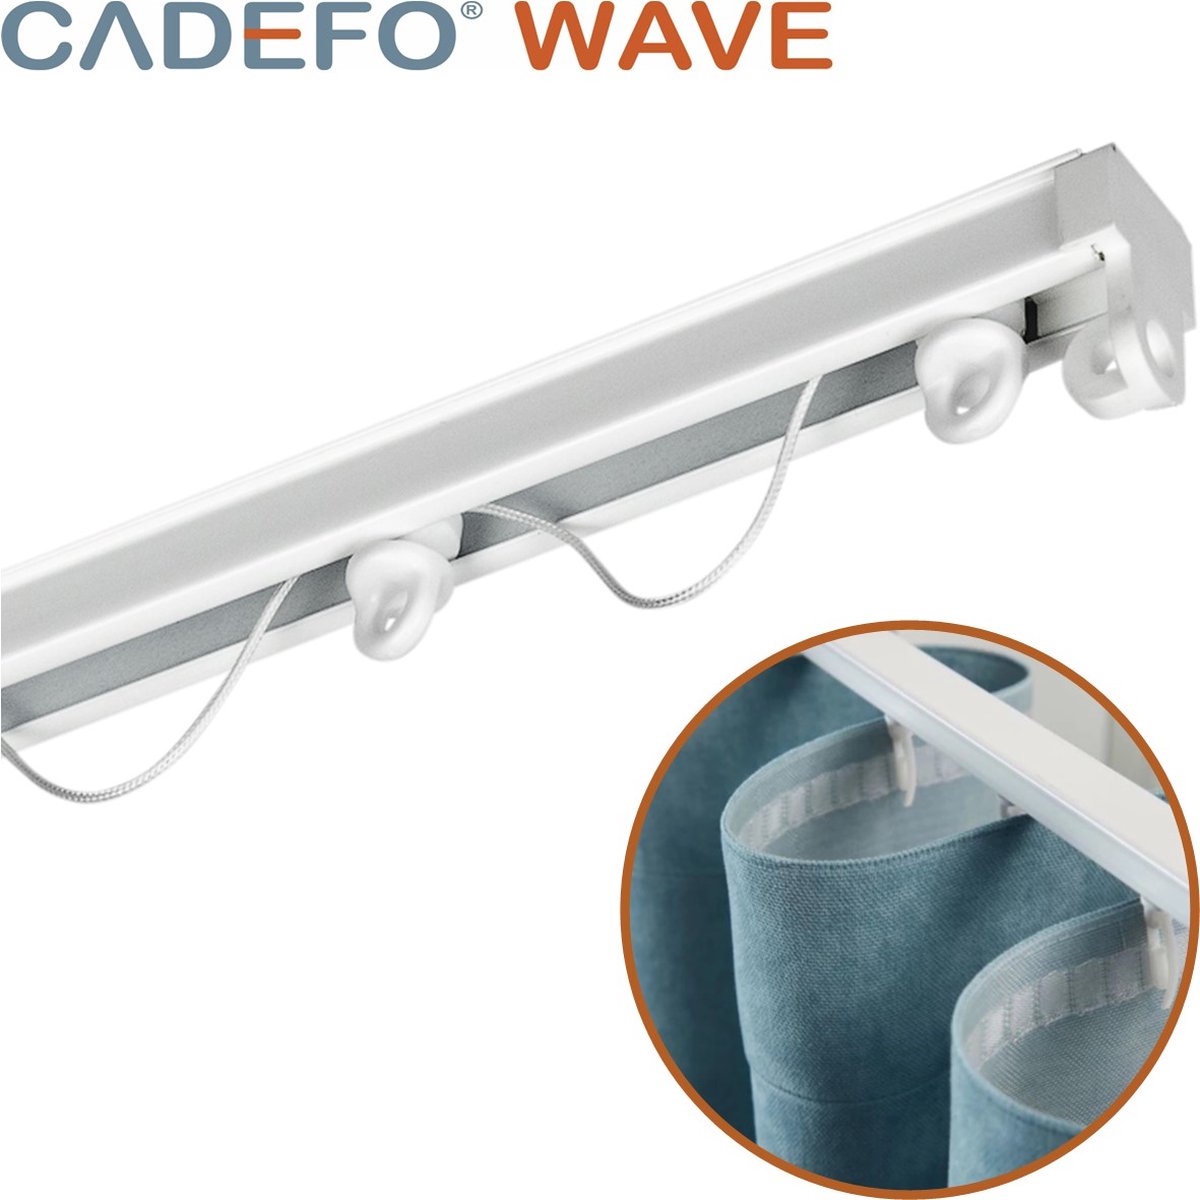 CADEFO WAVE (201 - 250 cm) Gordijnrails - Compleet op maat! - UIT 1 STUK - Leverbaar tot 6 meter - Plafondbevestiging - Lengte 202 cm